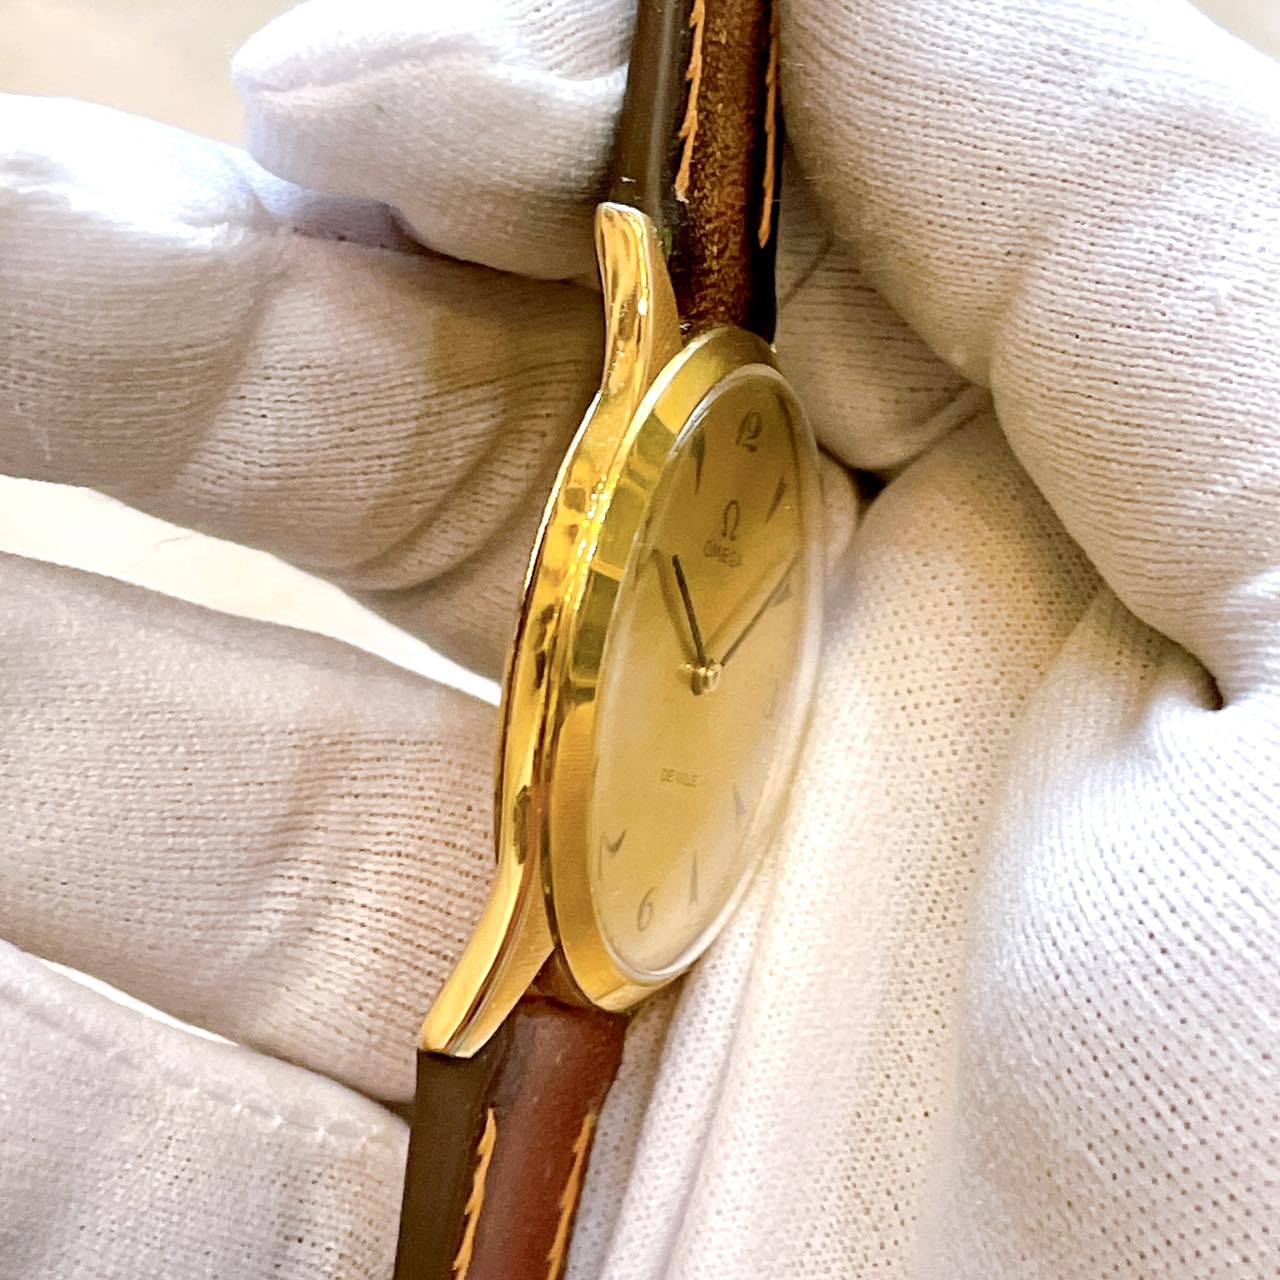 Đồng hồ cổ Omega De Ville Automatic siêu mỏng bọc vàng 14k chính hãng thụy Sĩ 